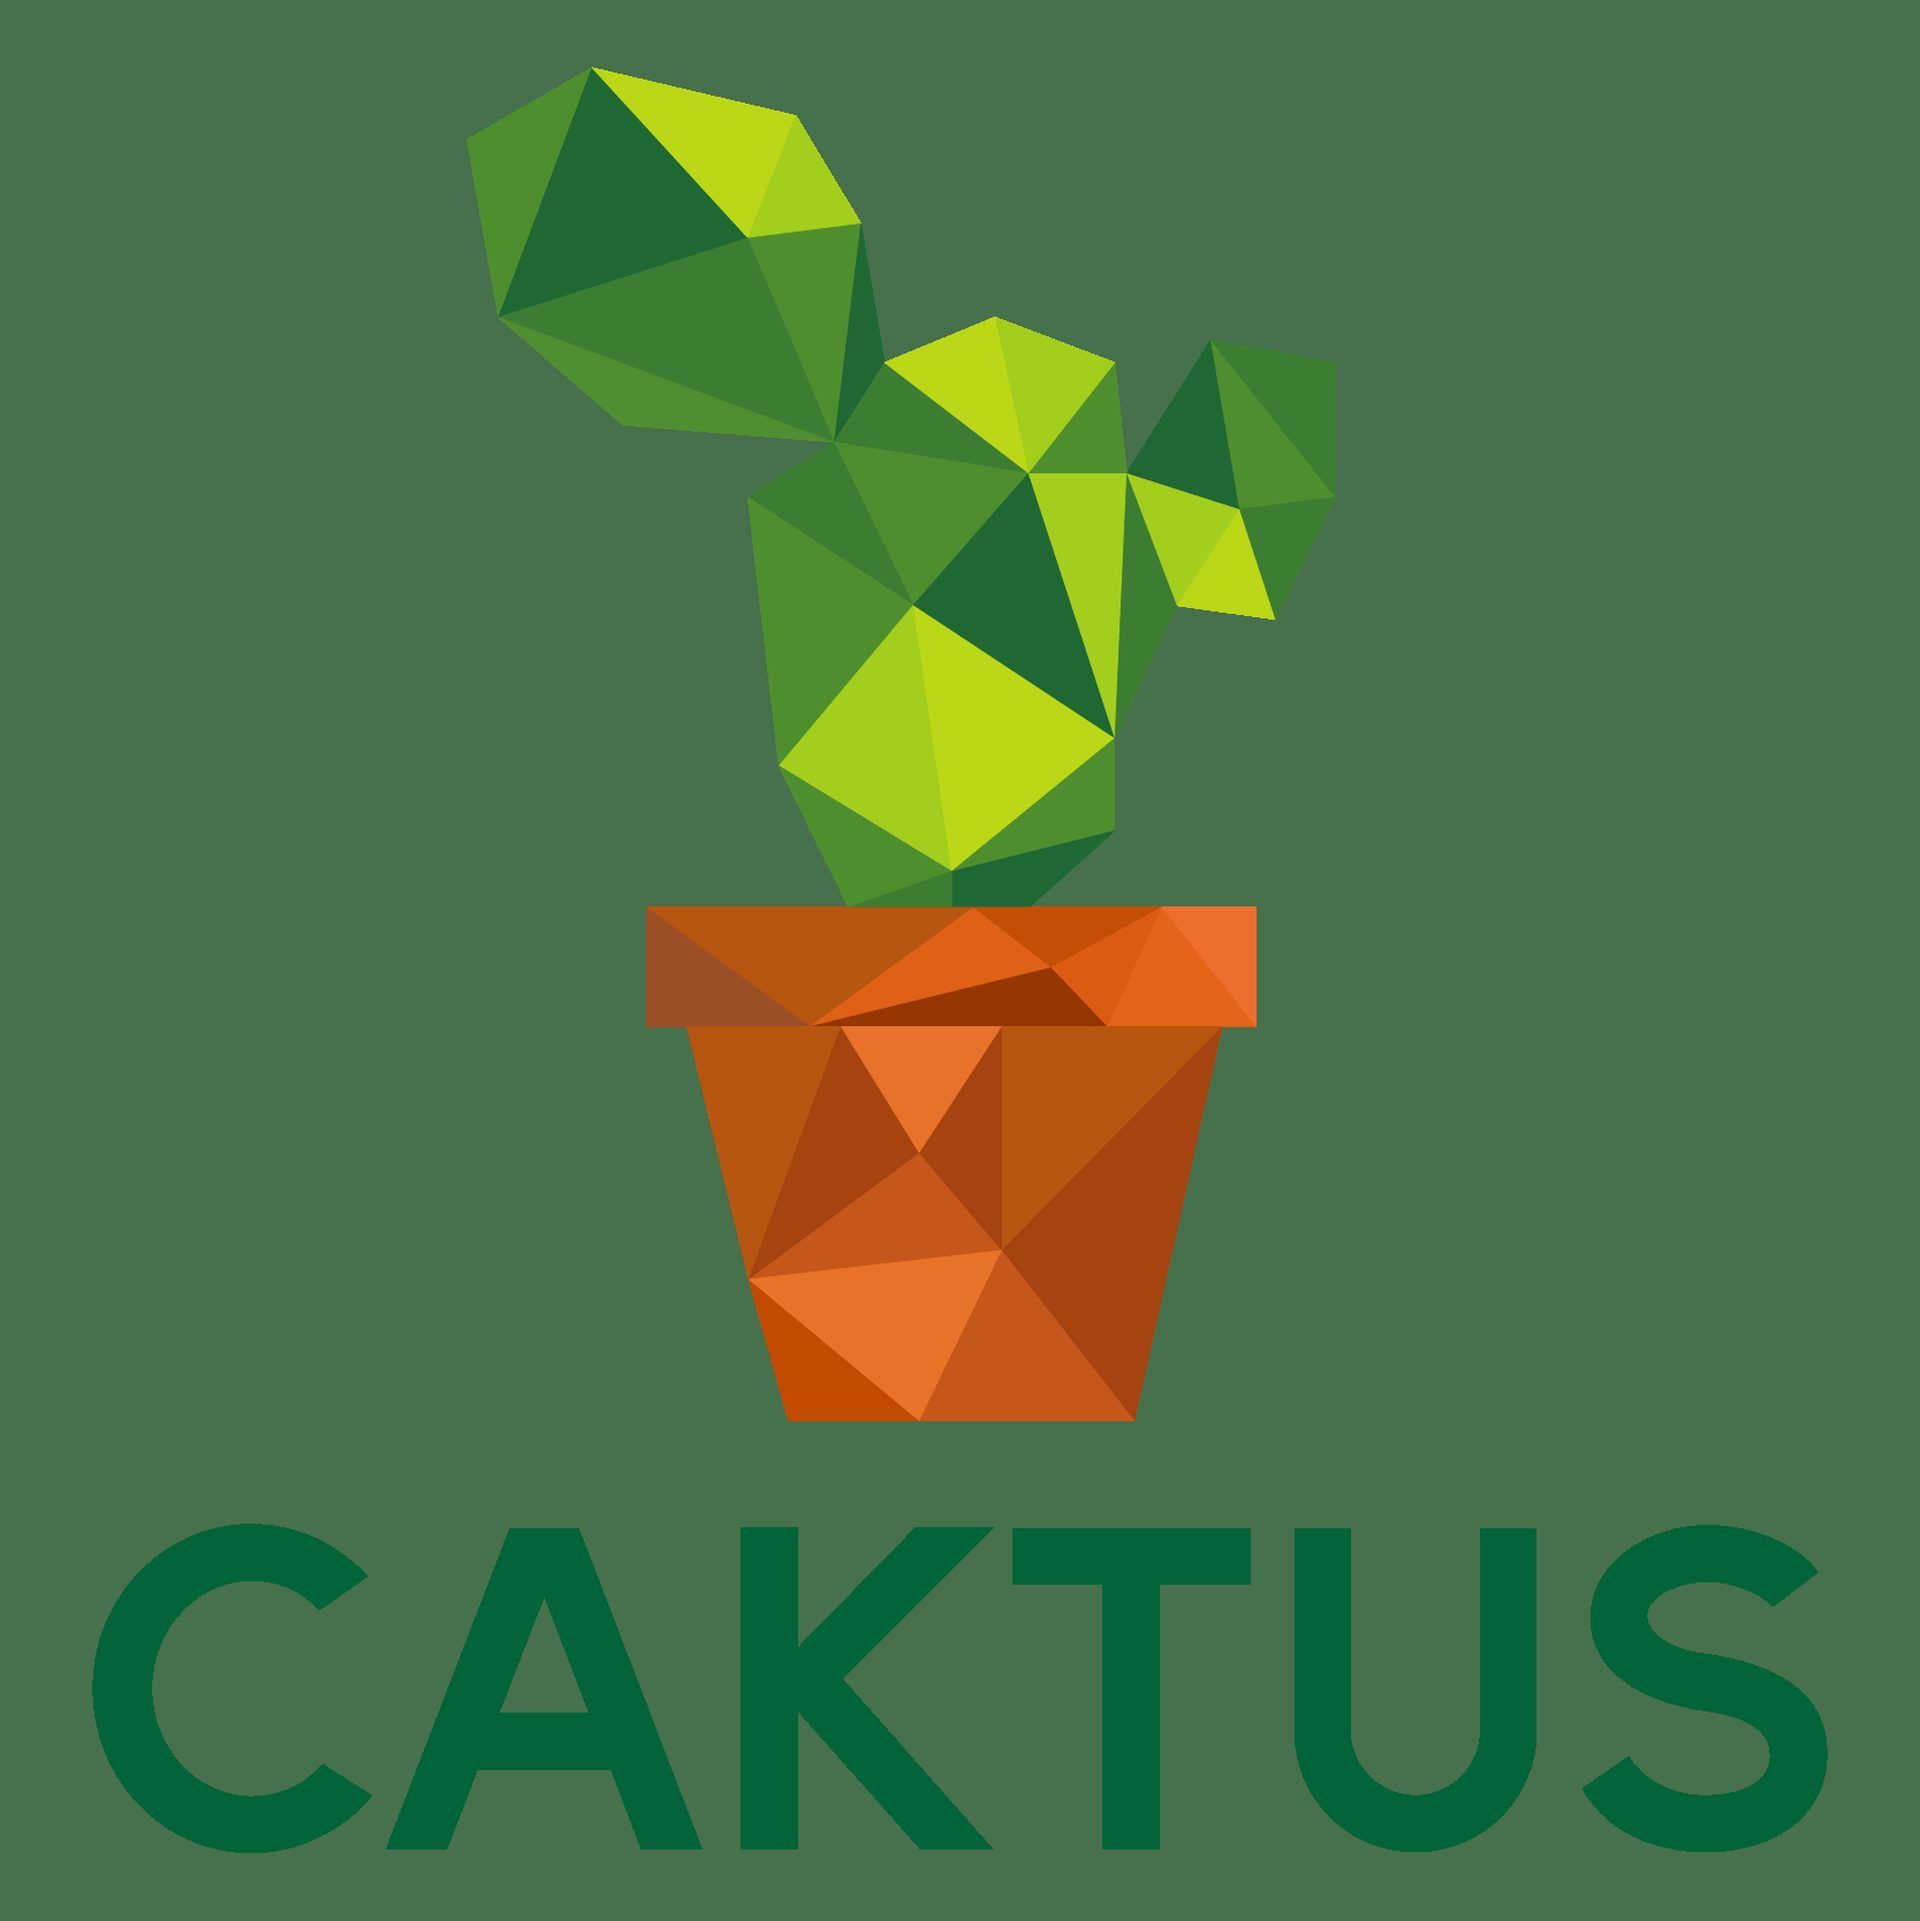 cactus al essay writer